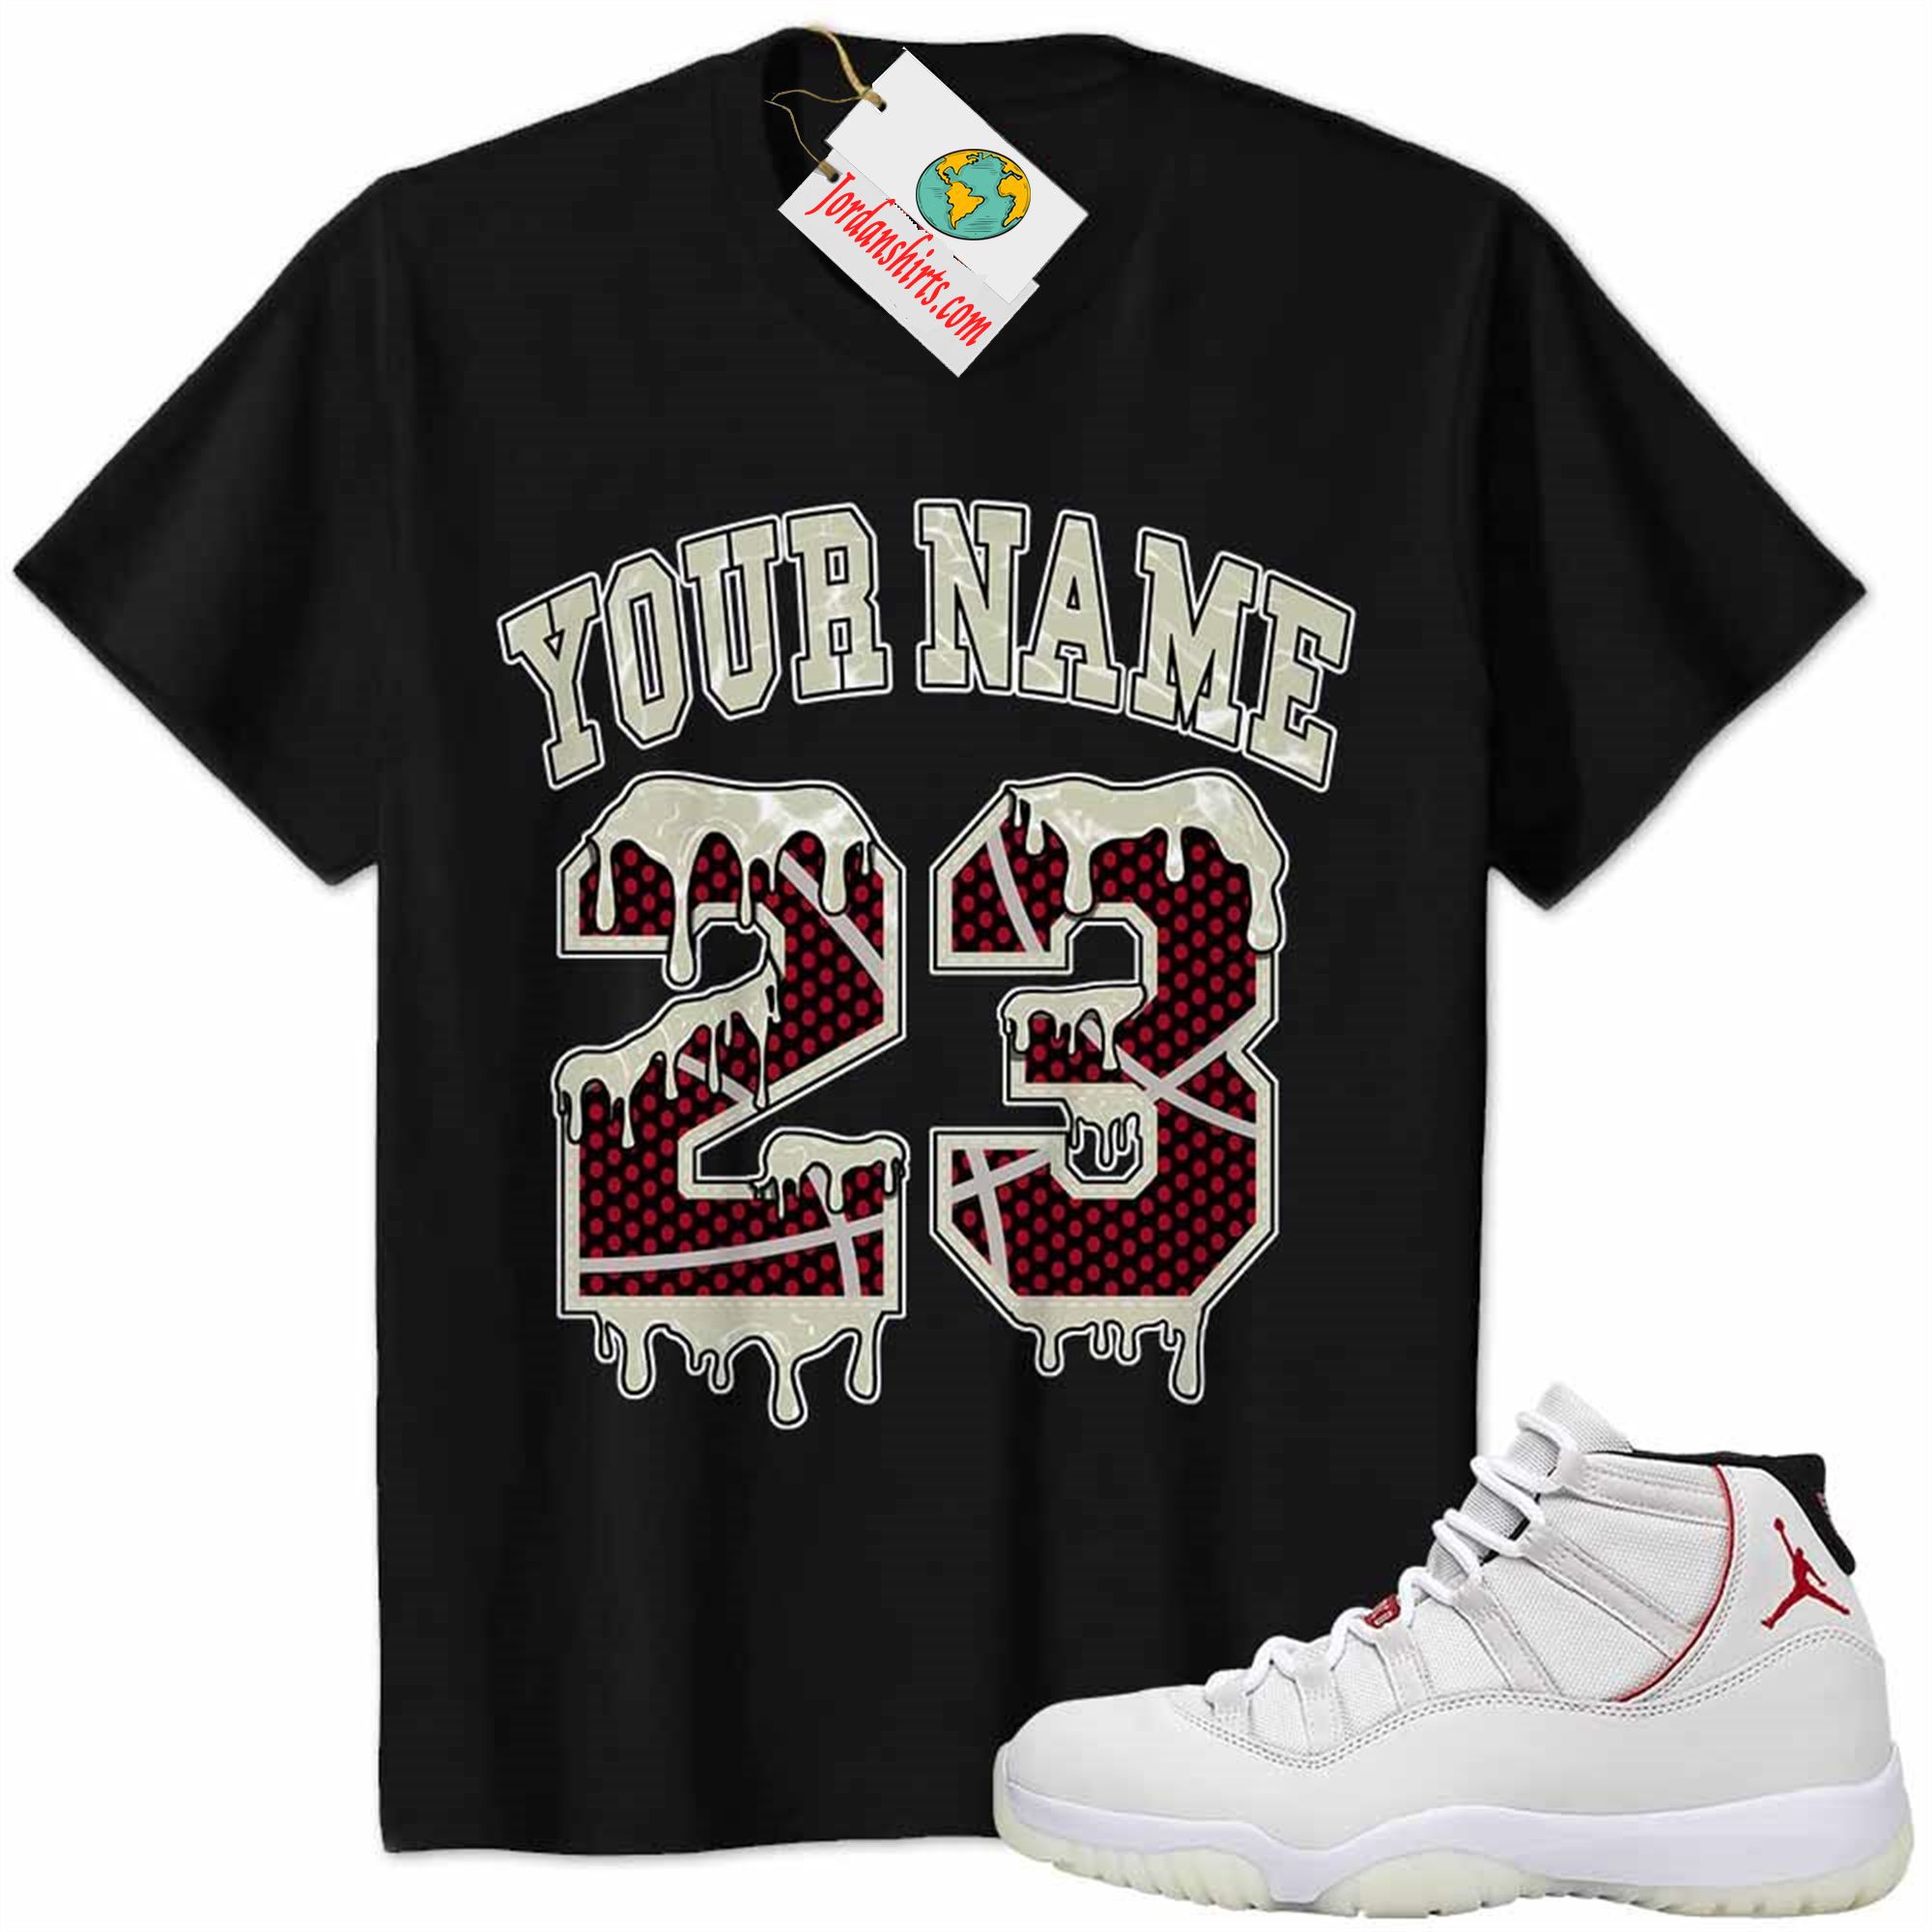 Jordan 11 Shirt, Jordan 11 Platinum Tint Shirt Personalized No23 Drippin Black Size Up To 5xl